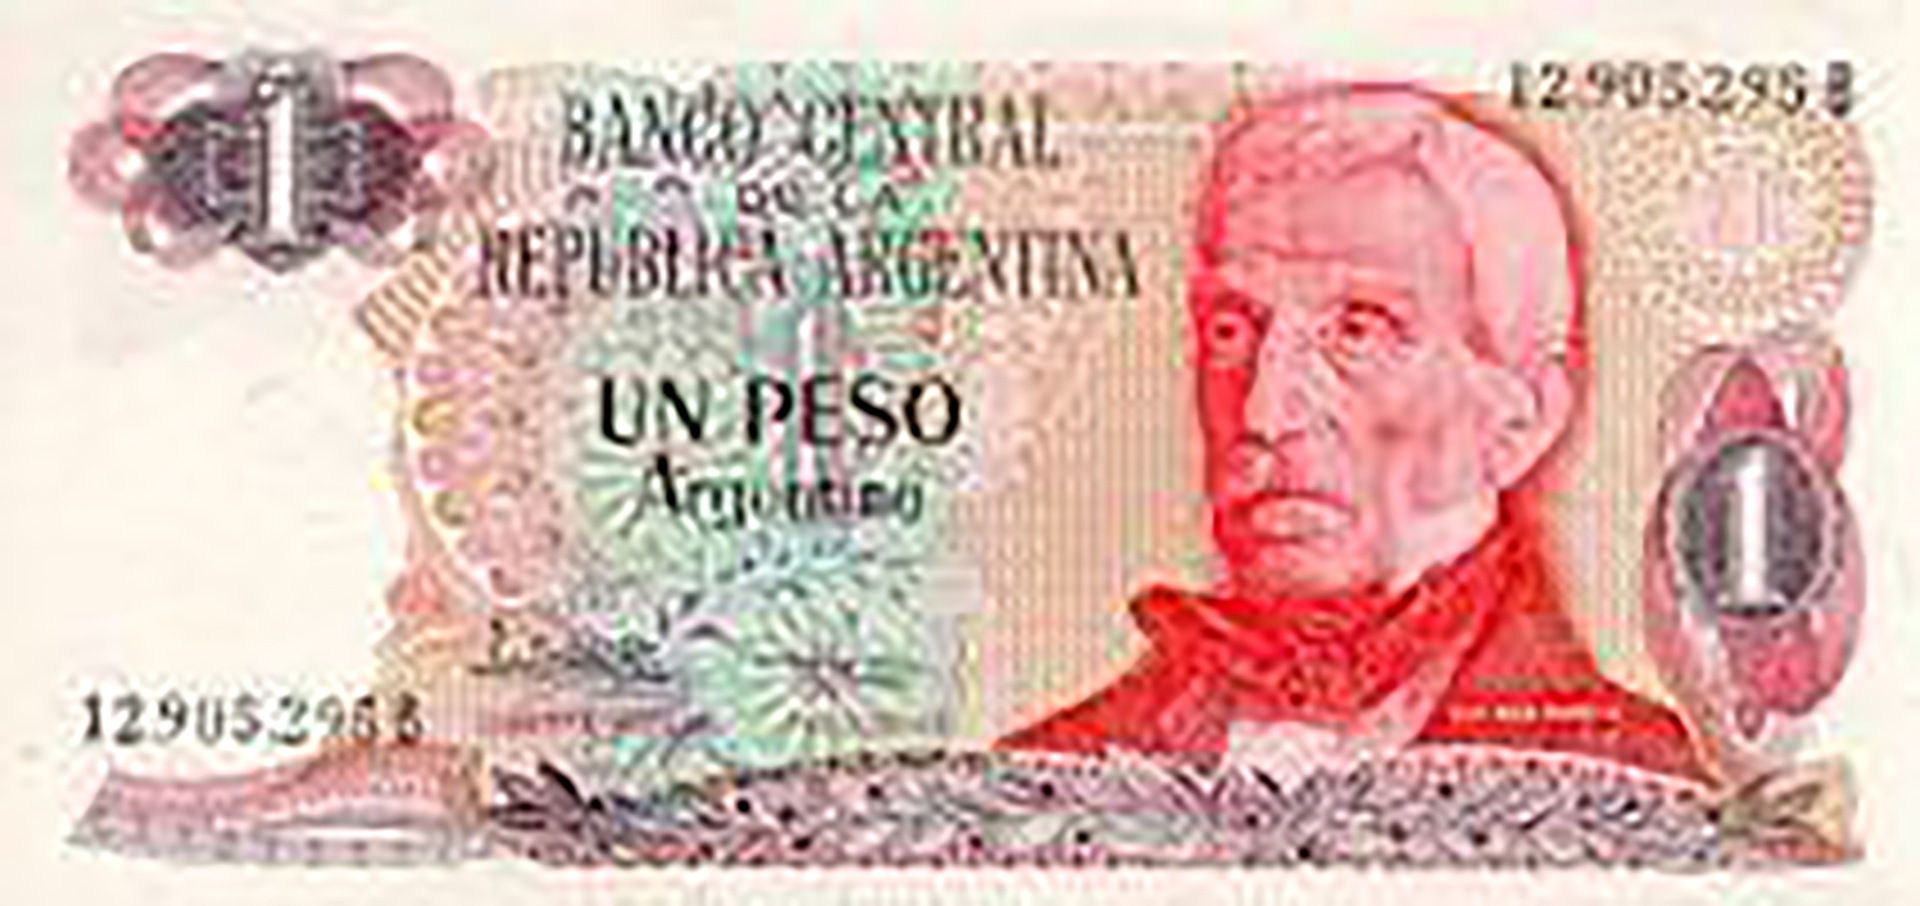 En su menos de 2 años de vida el peso argentino pasó de una emisión de billetes con una nominalidad de $a 100 el 1 de junio de ese año a la de $a 10.000 el 3 de abril de 1985, un salto de 999%, a un ritmo equivalente anual de más de 200% acumulativo